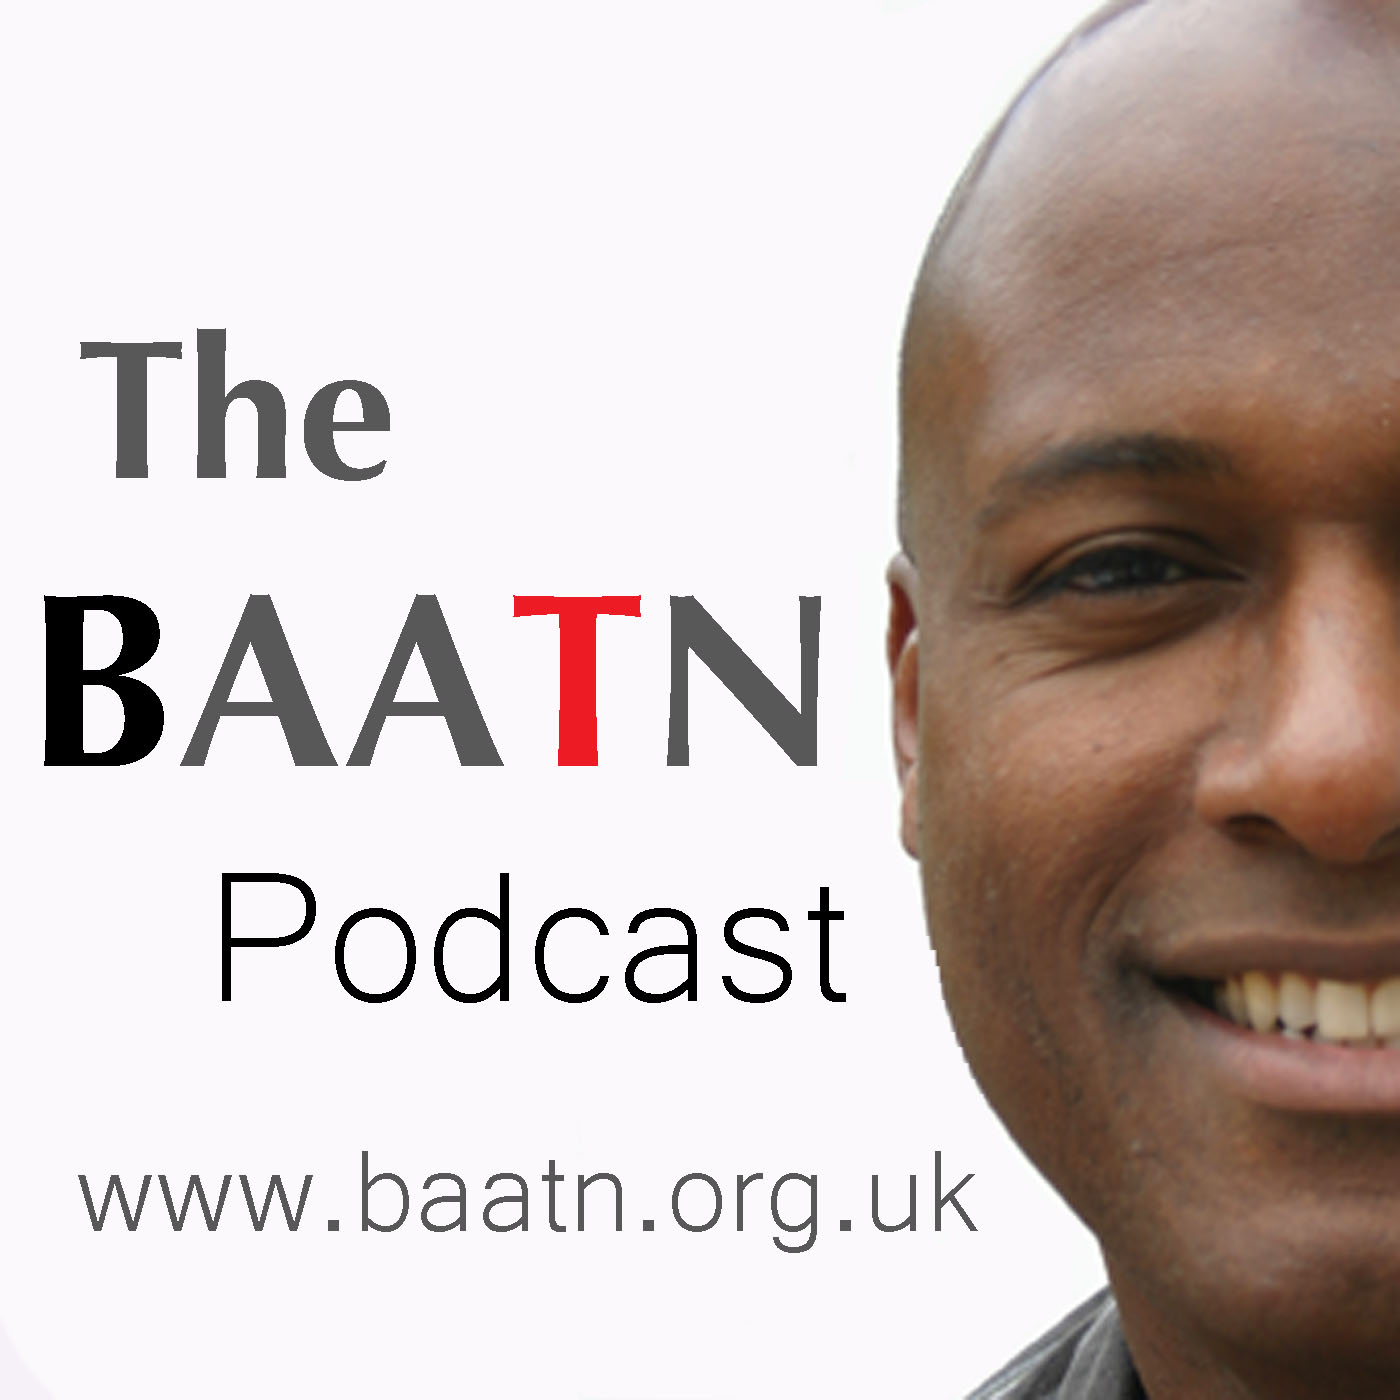 The BAATN Podcast